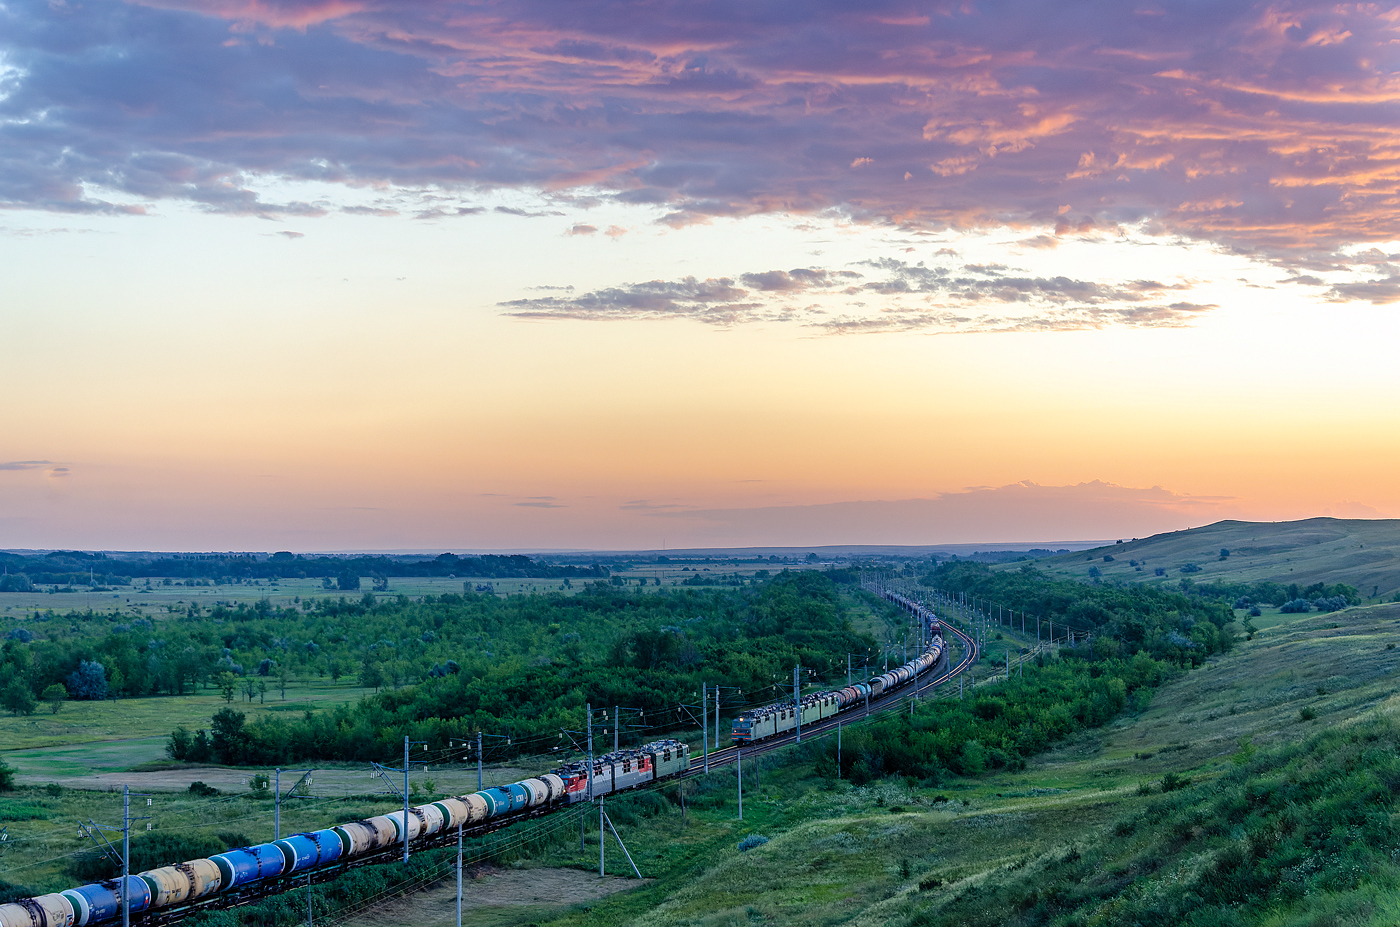 Приволжская железная дорога — Перегоны